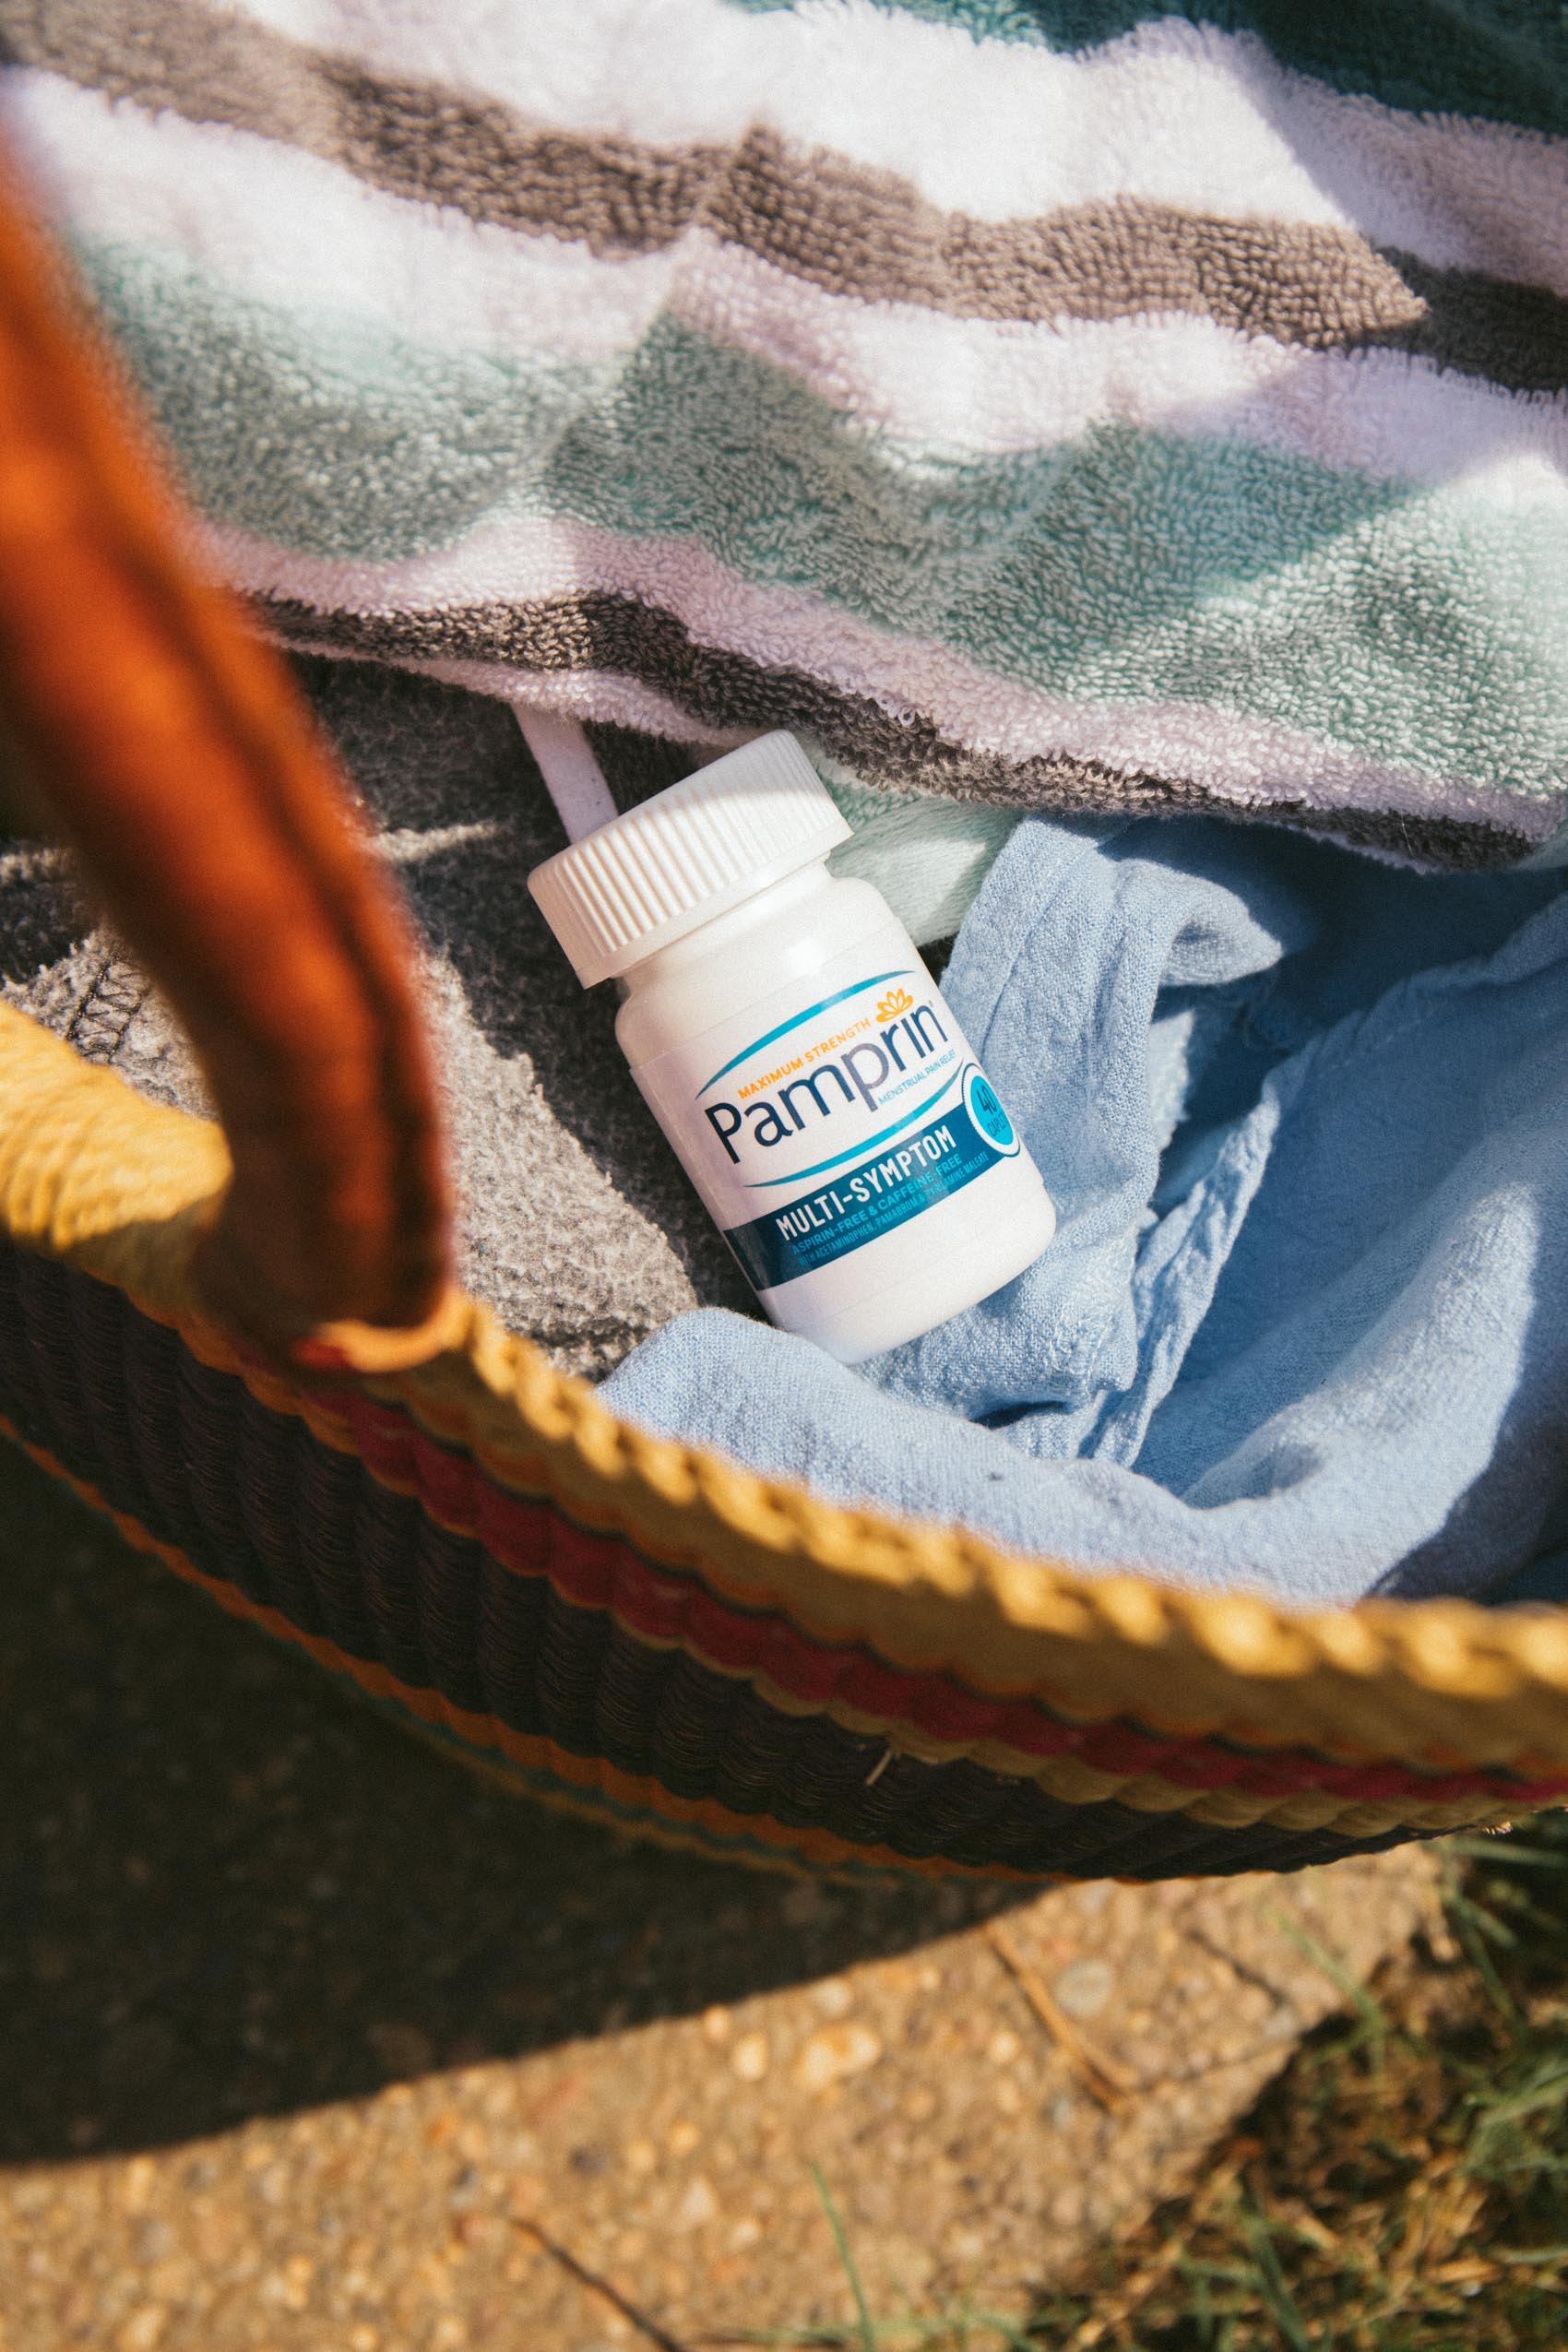 Pamprin Multi-Sympton period relief in a beach bag